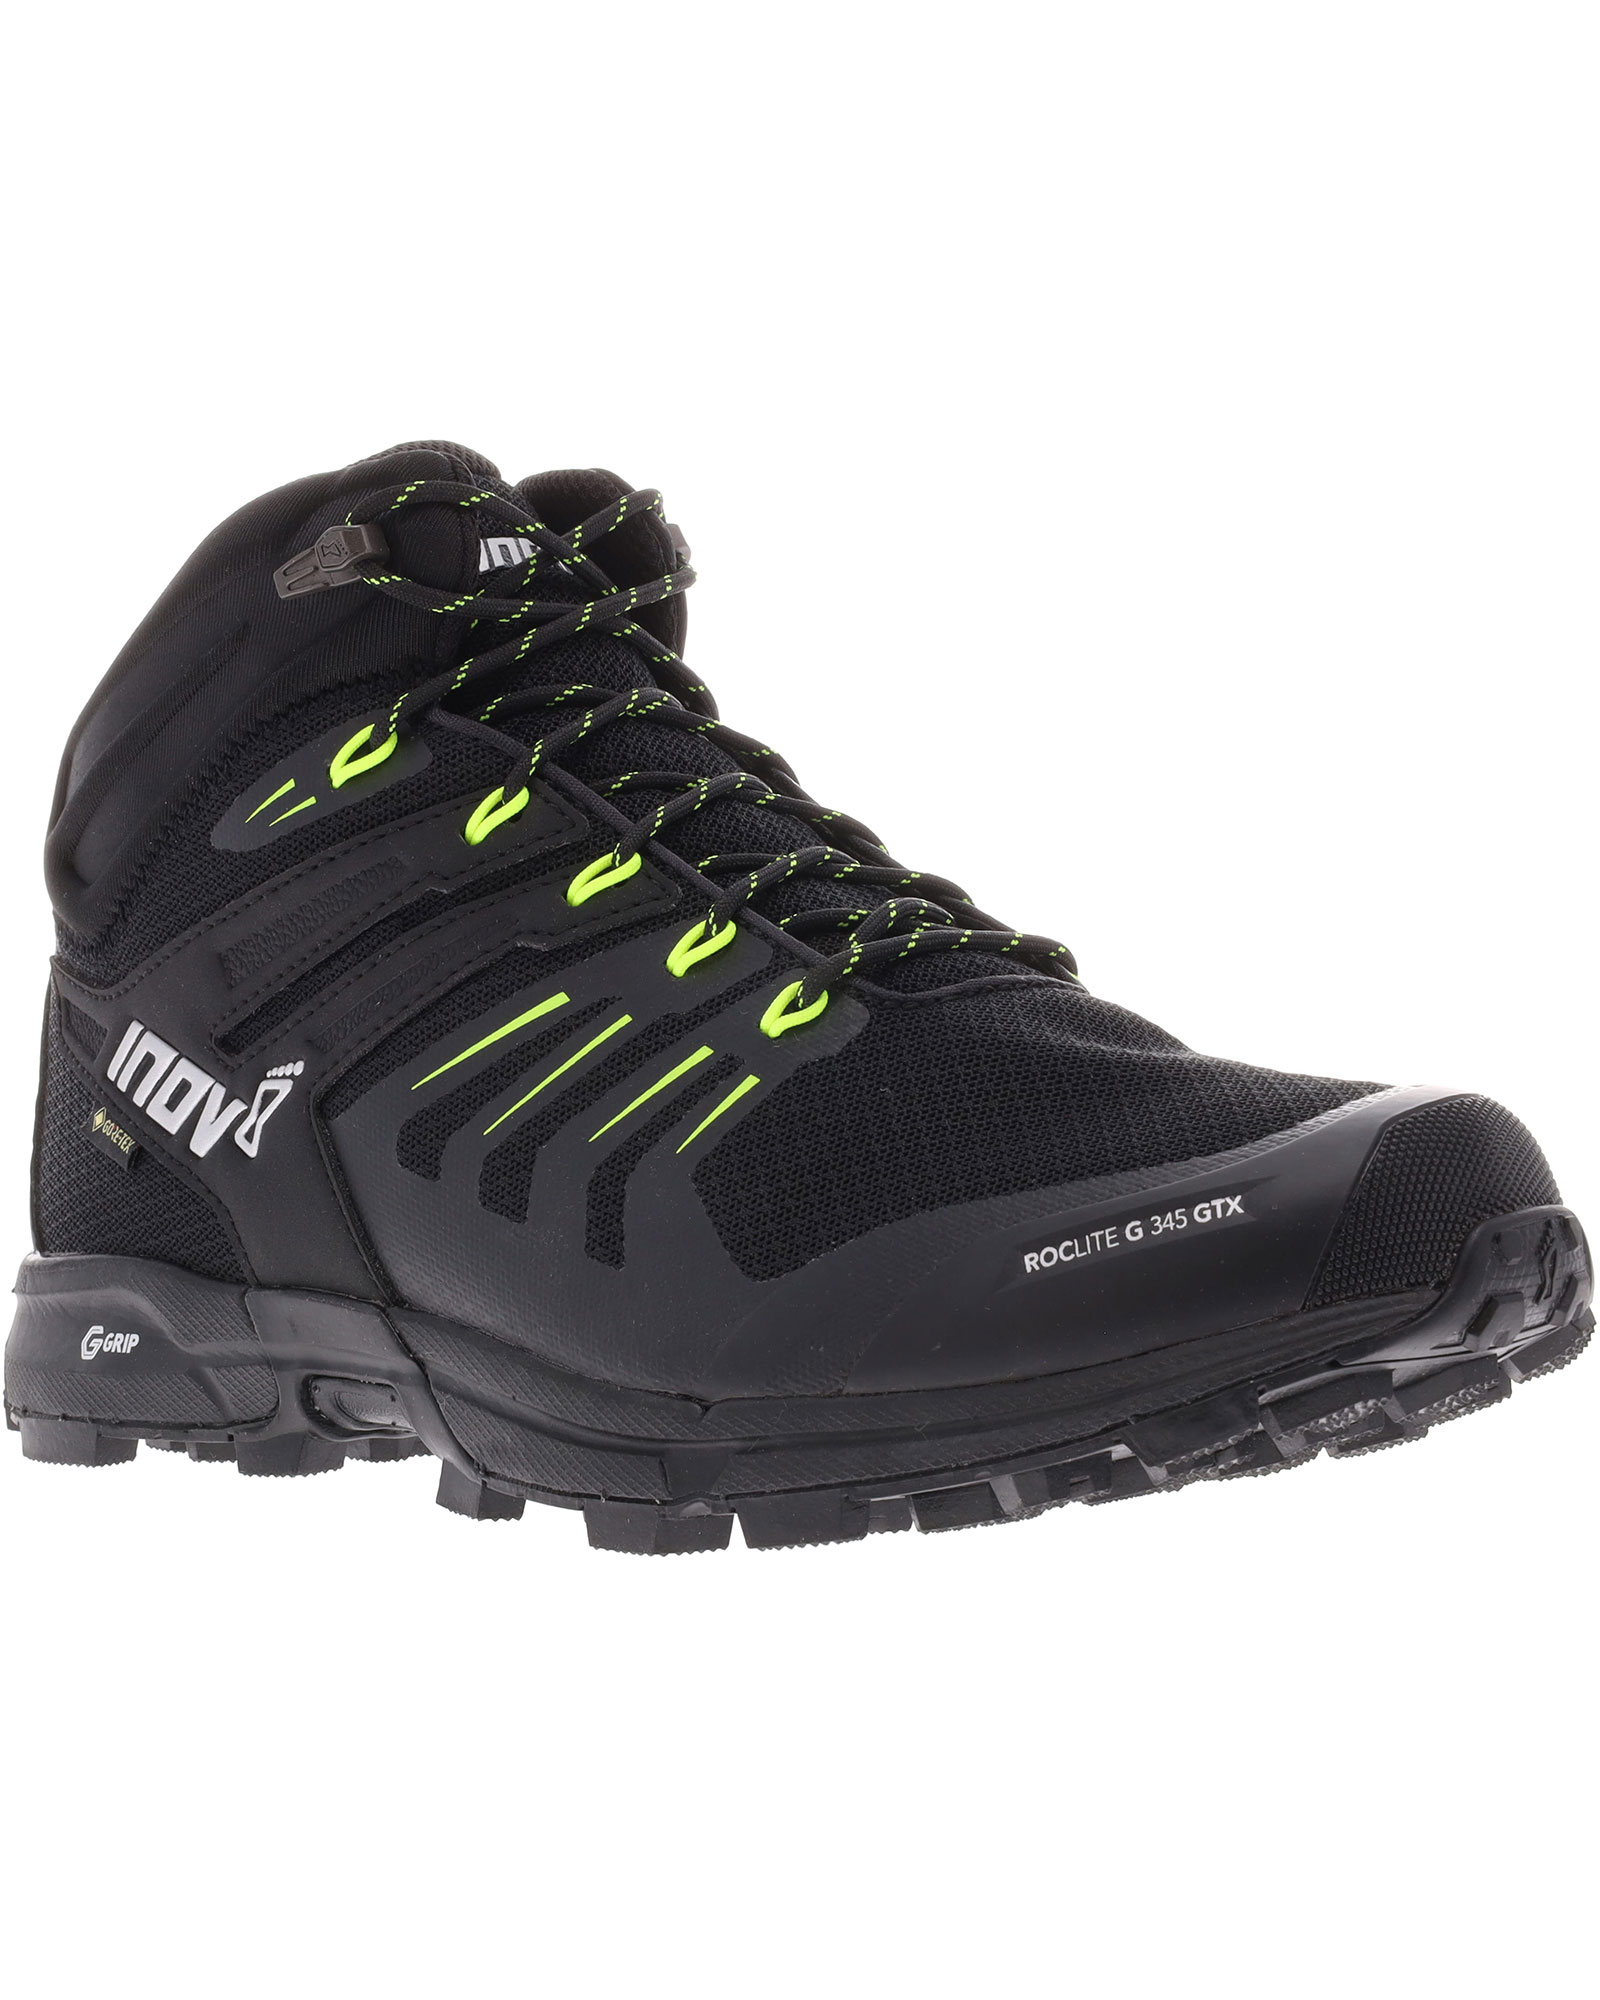 Inov 8 Roclite G 345 V2 GORE TEX Men’s Boots - Black/Lime UK 8